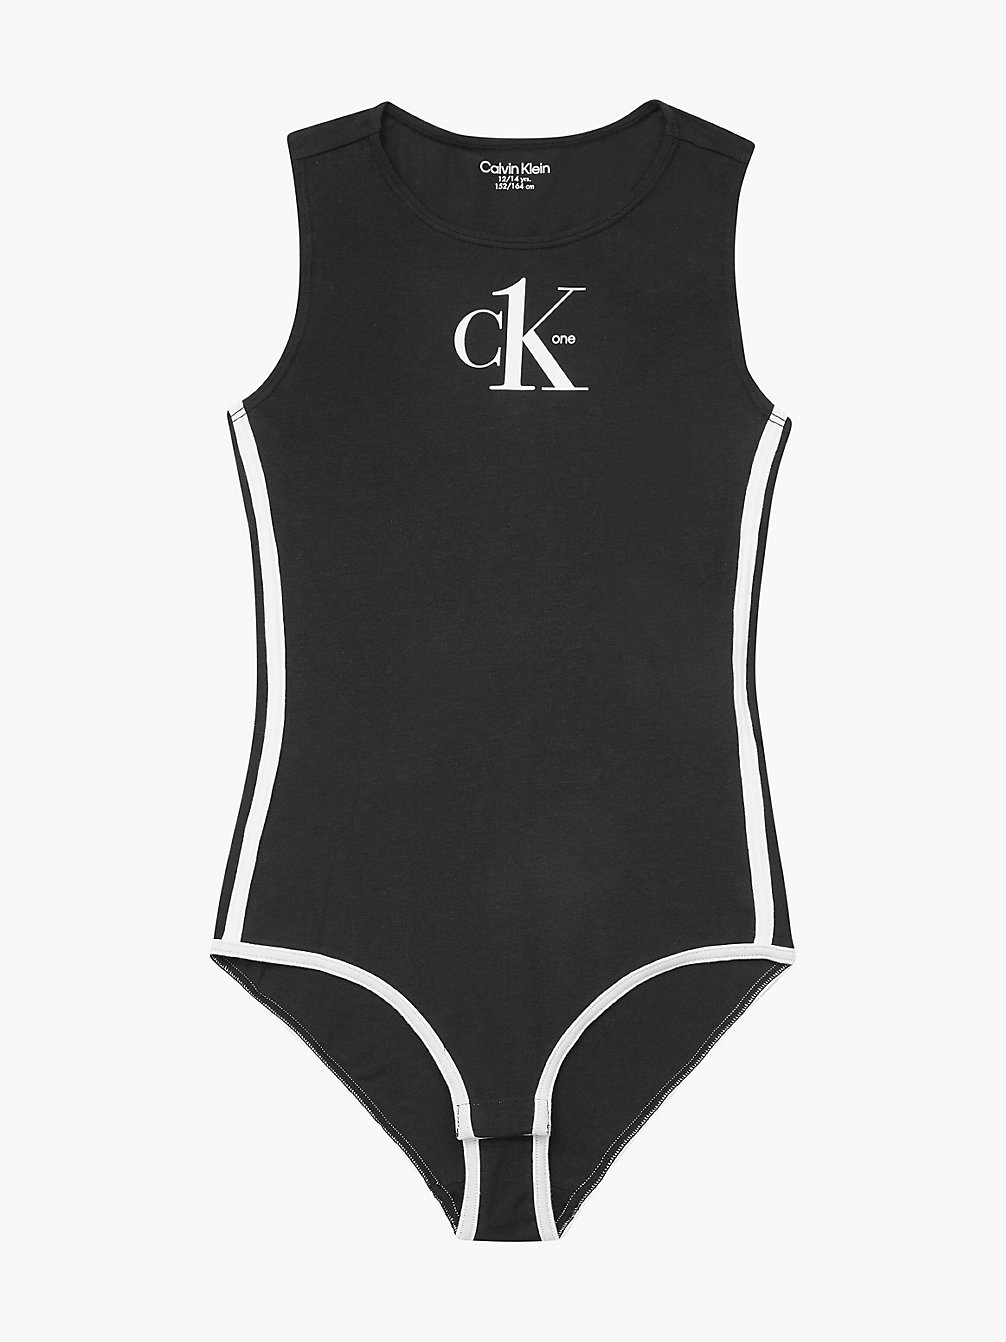 PVH BLACK Girls Bodysuit - CK One undefined girls Calvin Klein